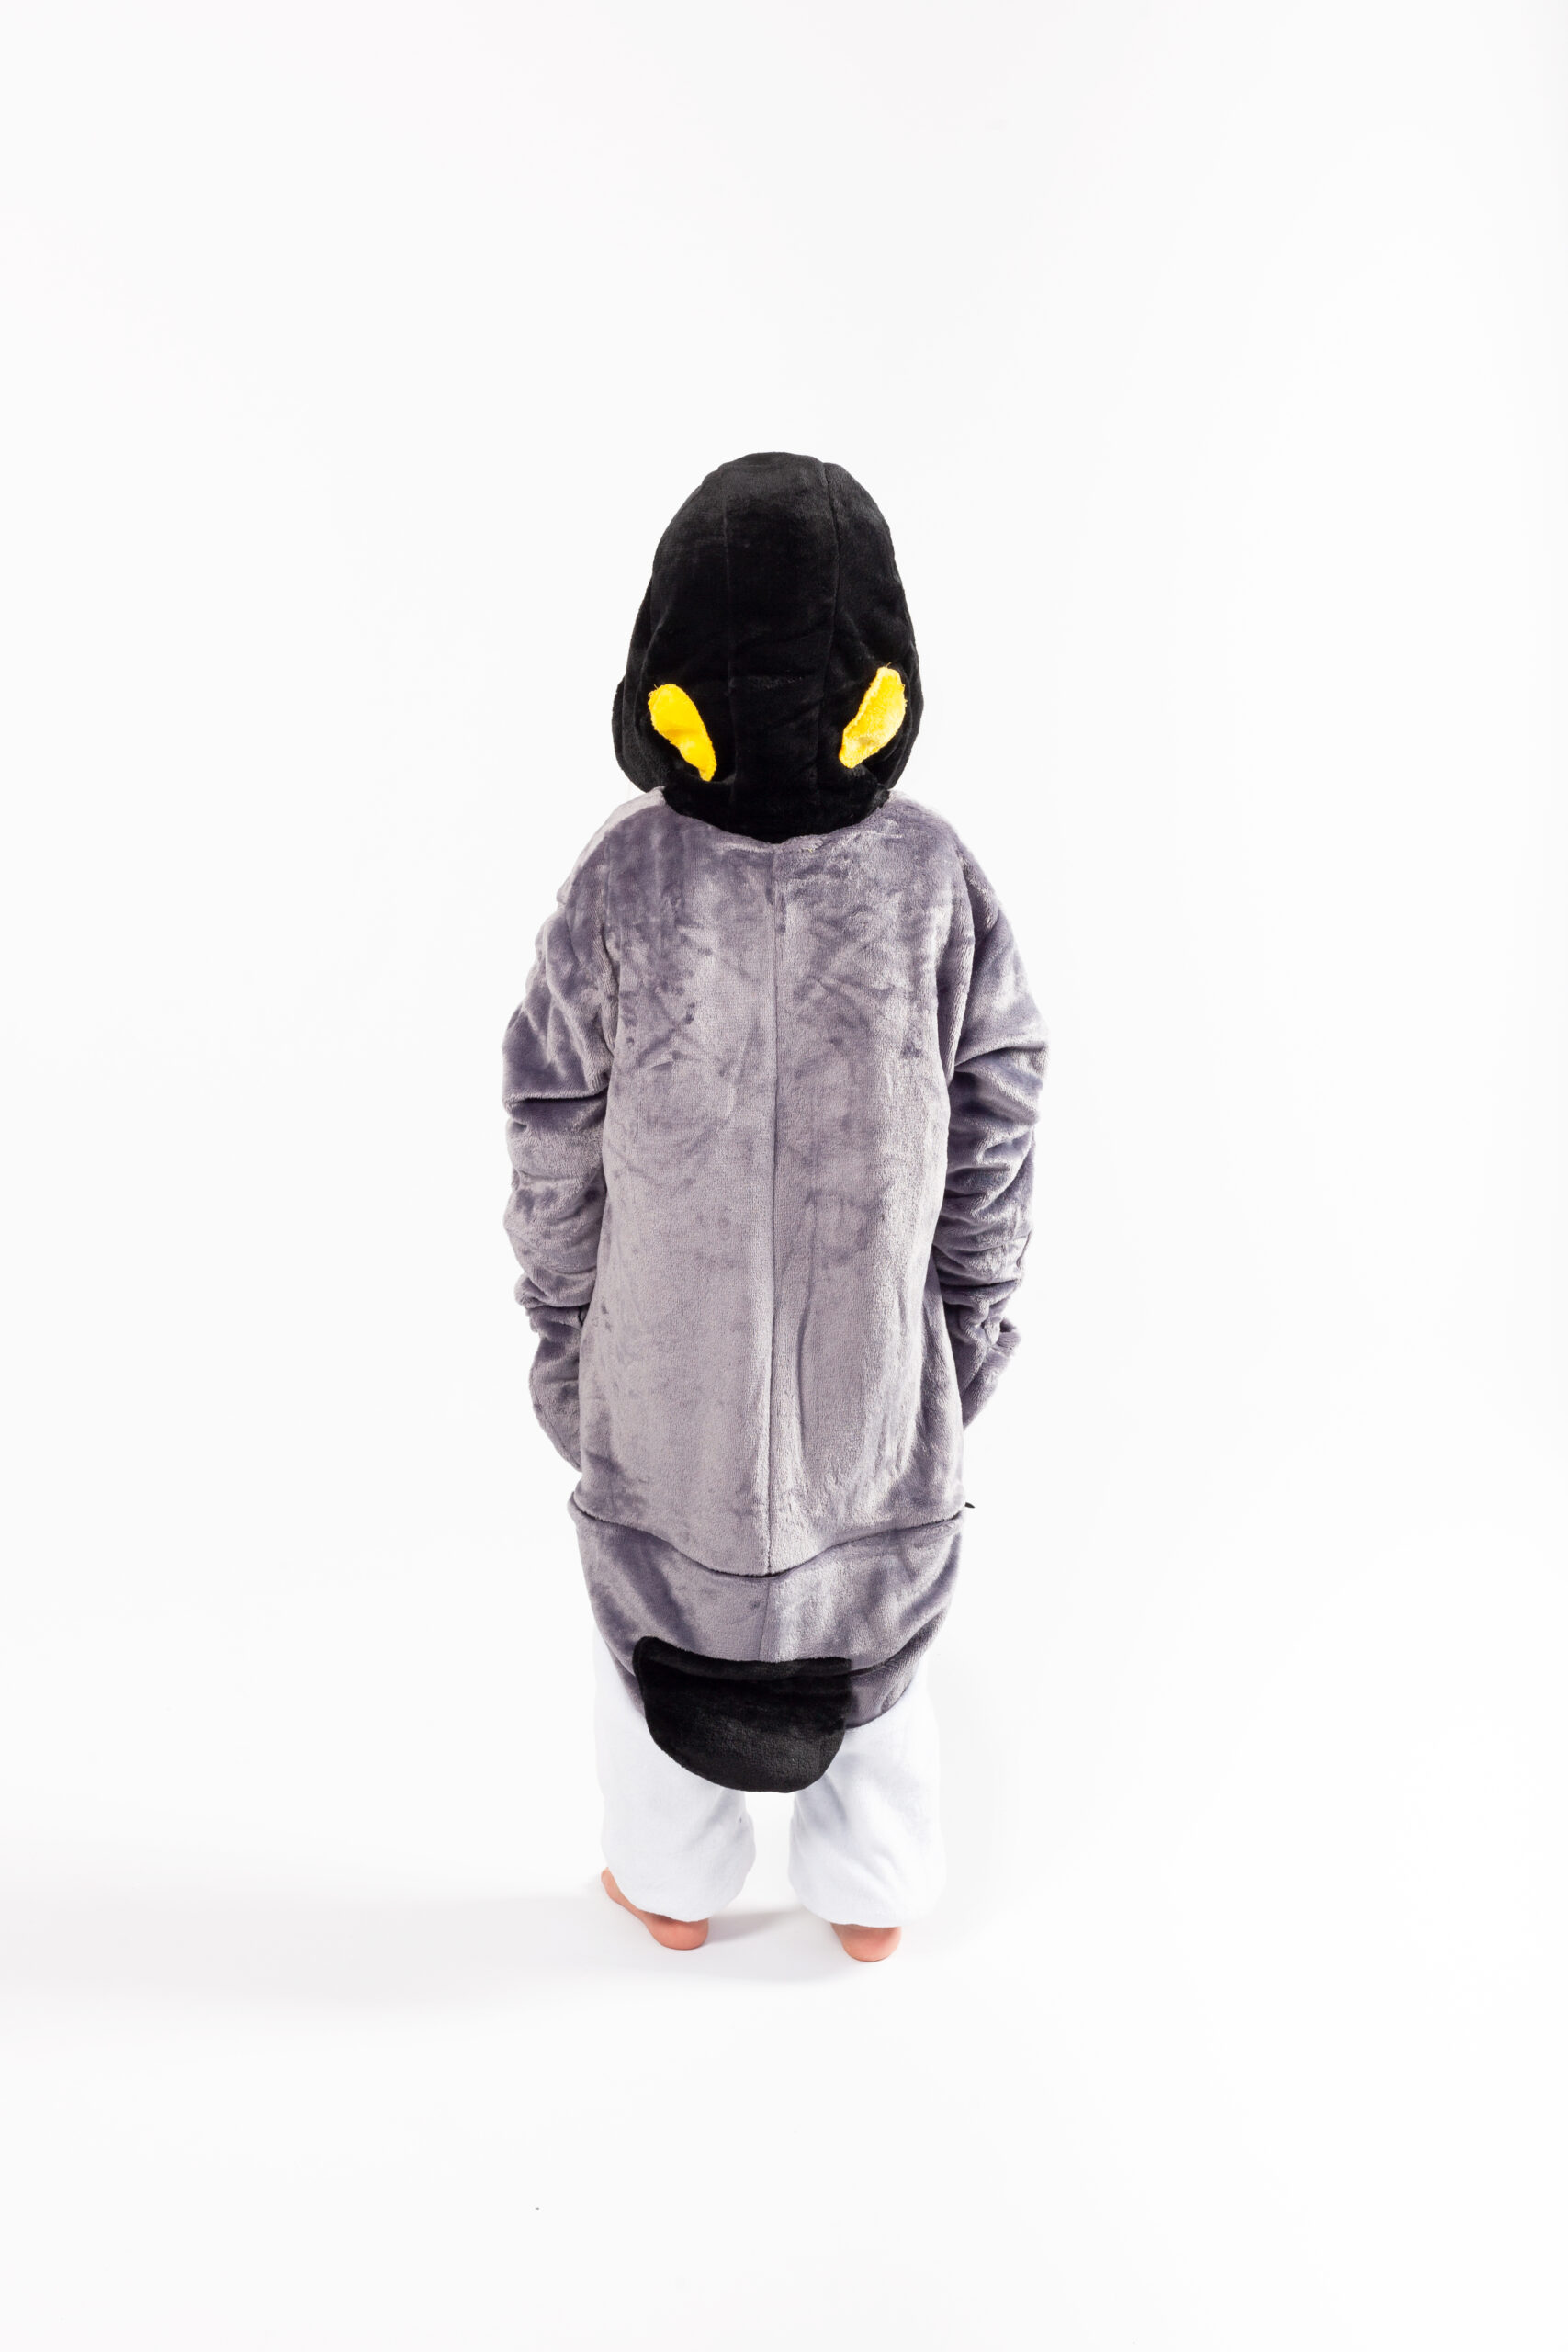 voorzetsel klauw vertegenwoordiger Grijze pinguin kinder onesie kopen? €29,95 - FeestinjeBeest.nl